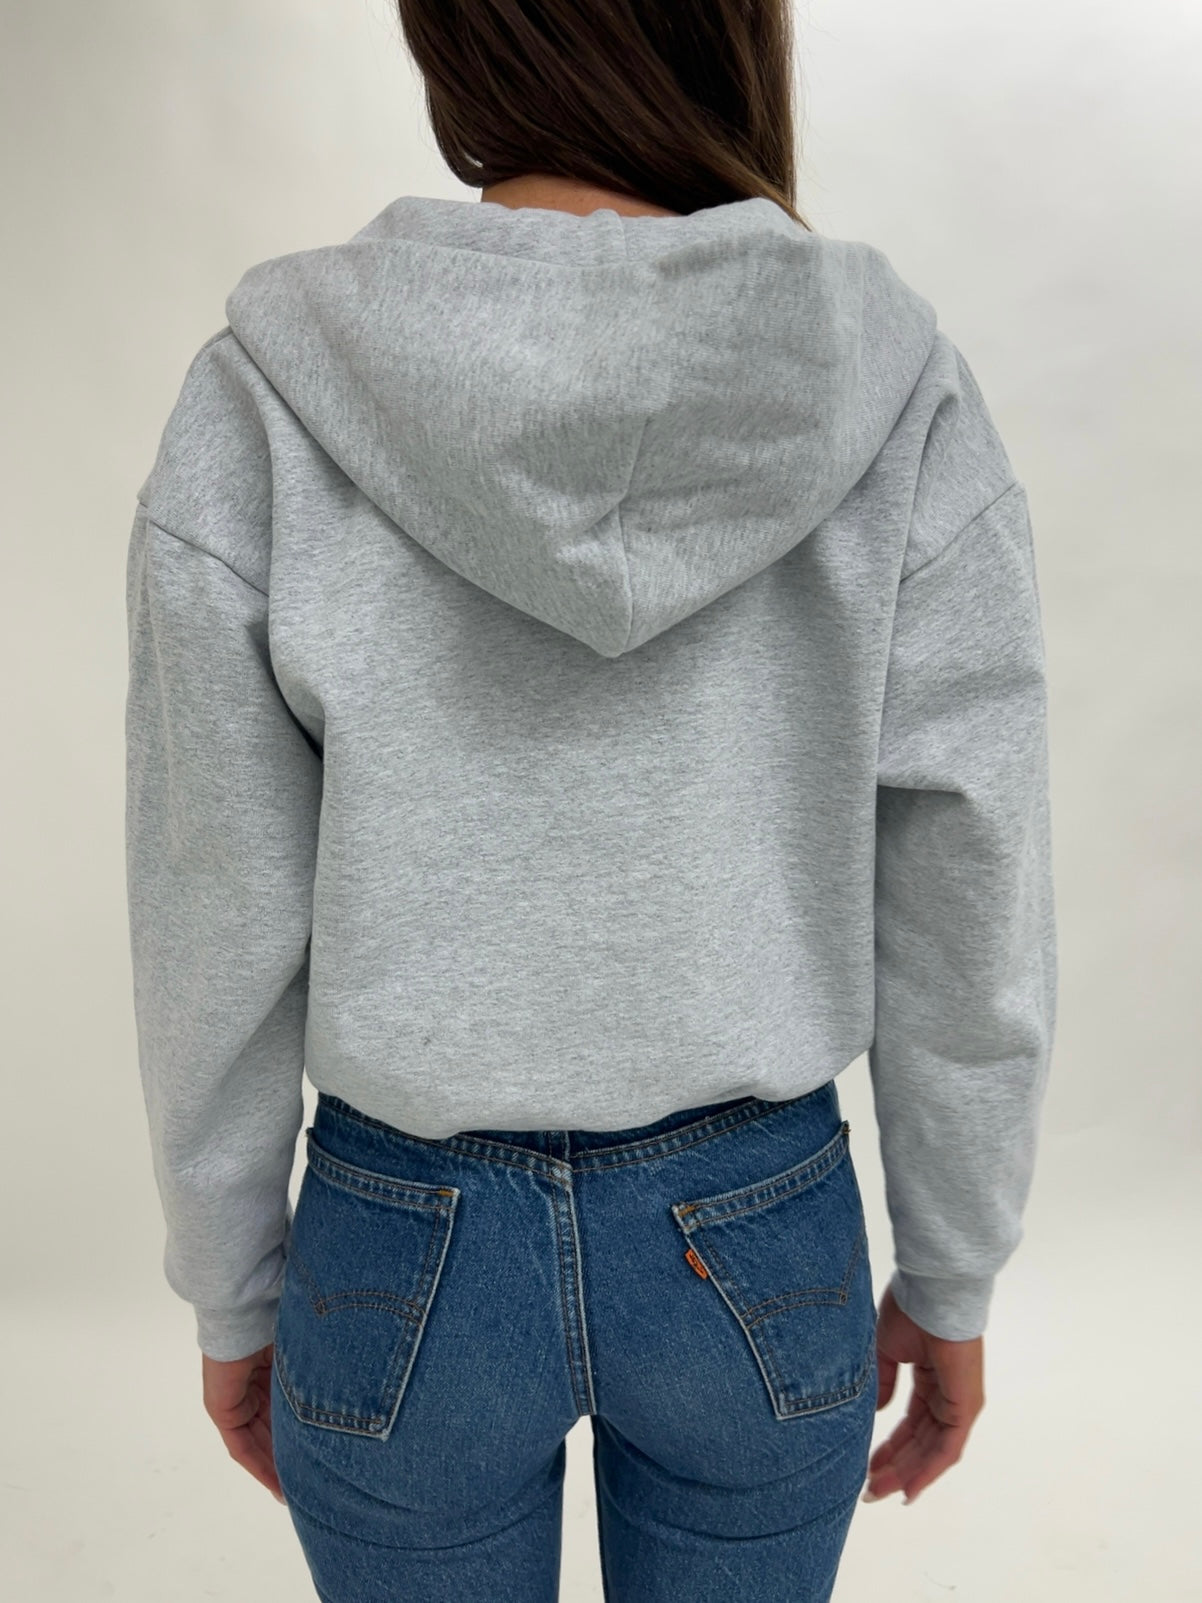 Jordan Zip Up Hoodie Sweatshirt Cropped Length